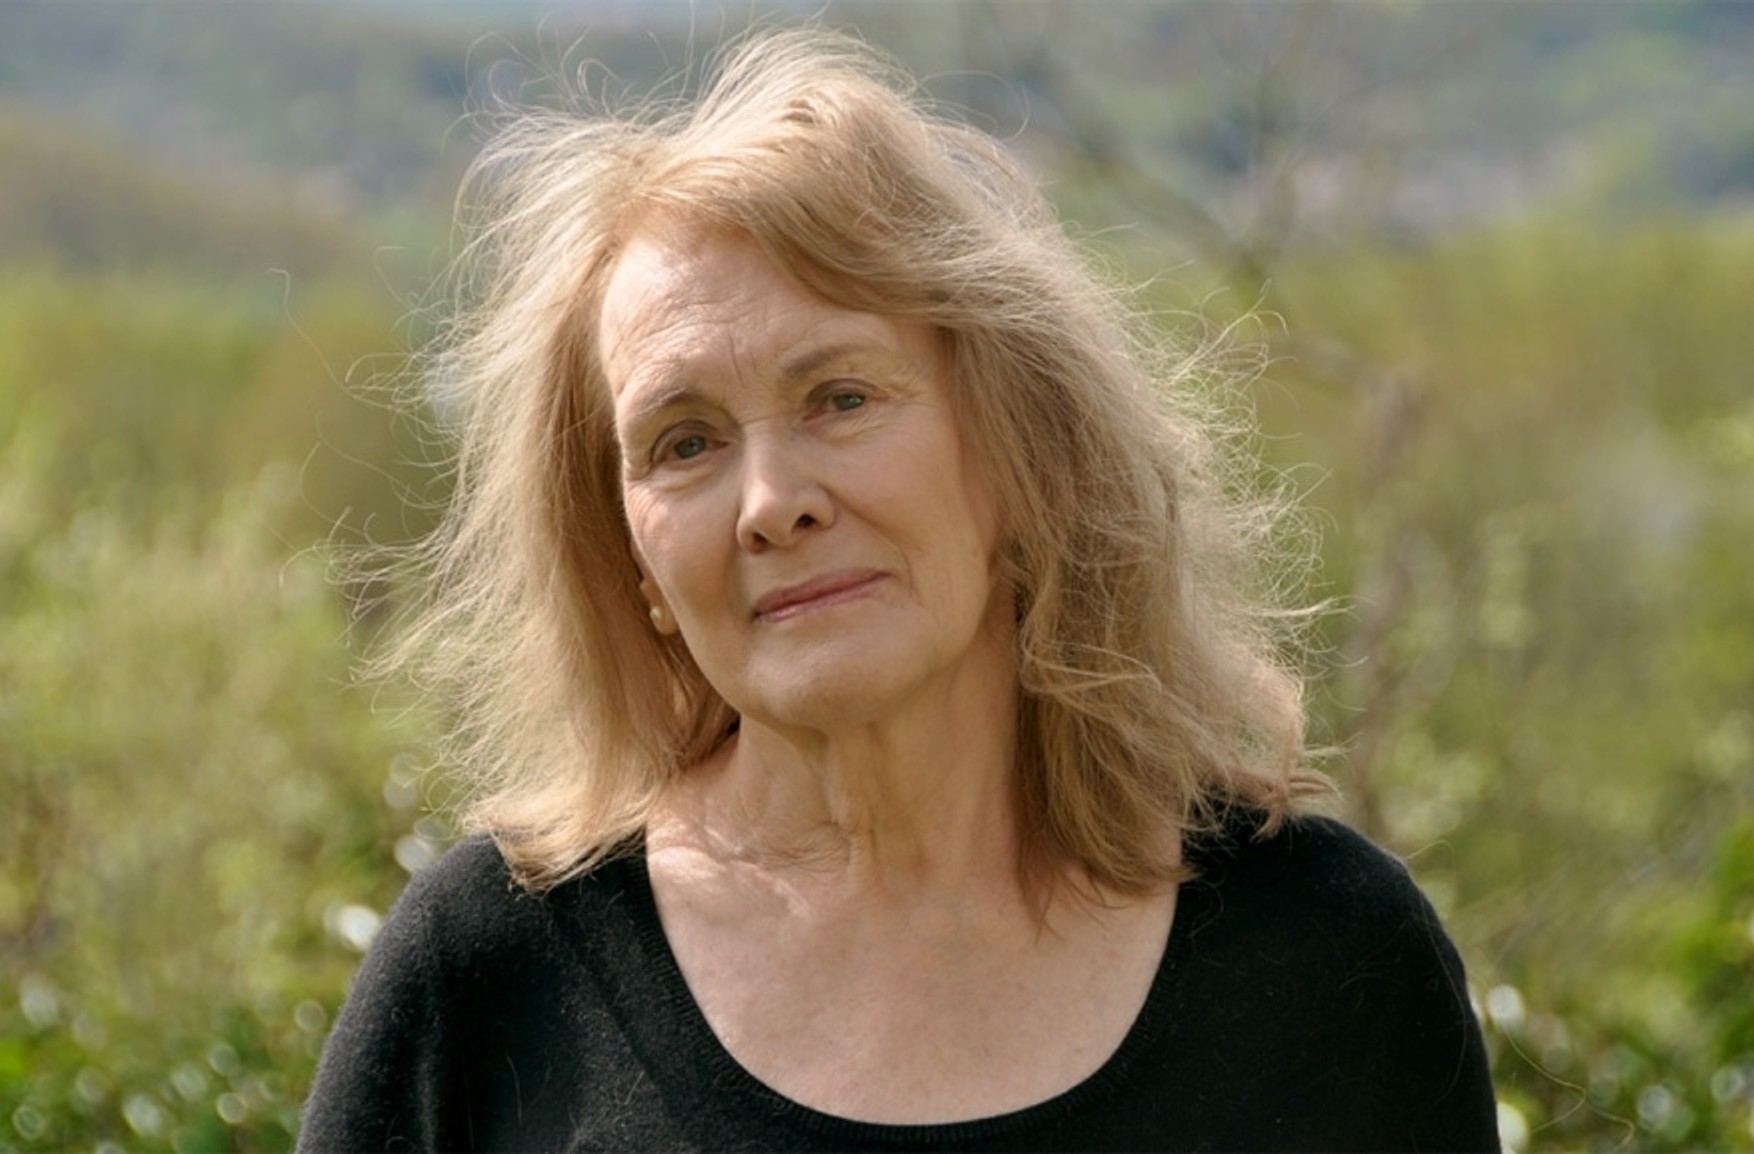 Нобелевскую премию по литературе получила французская писательница Анни Эрно